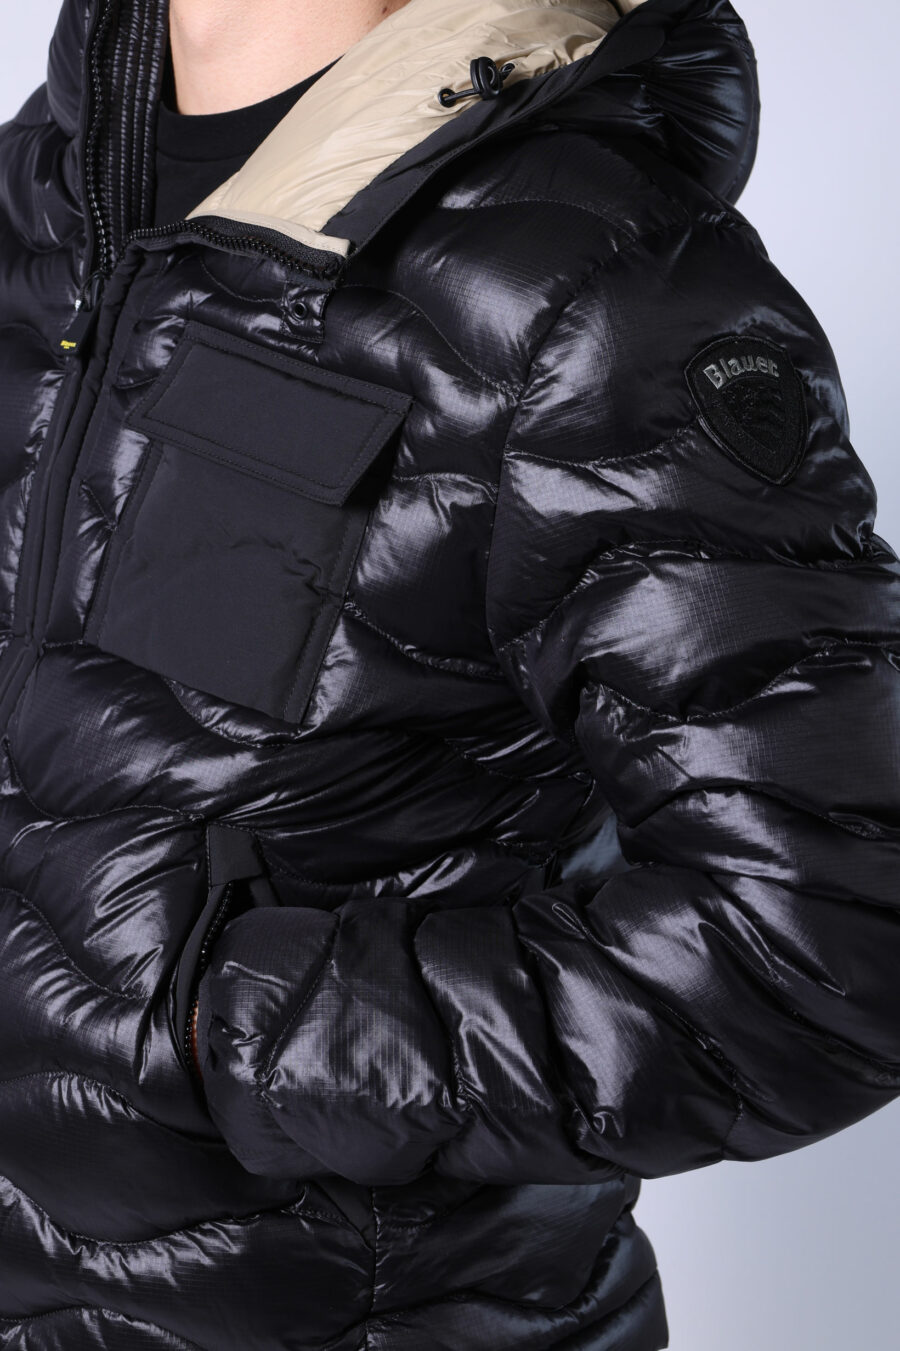 Veste à capuche noire avec lignes ondulées et doublure beige - Untitled Catalog 05515